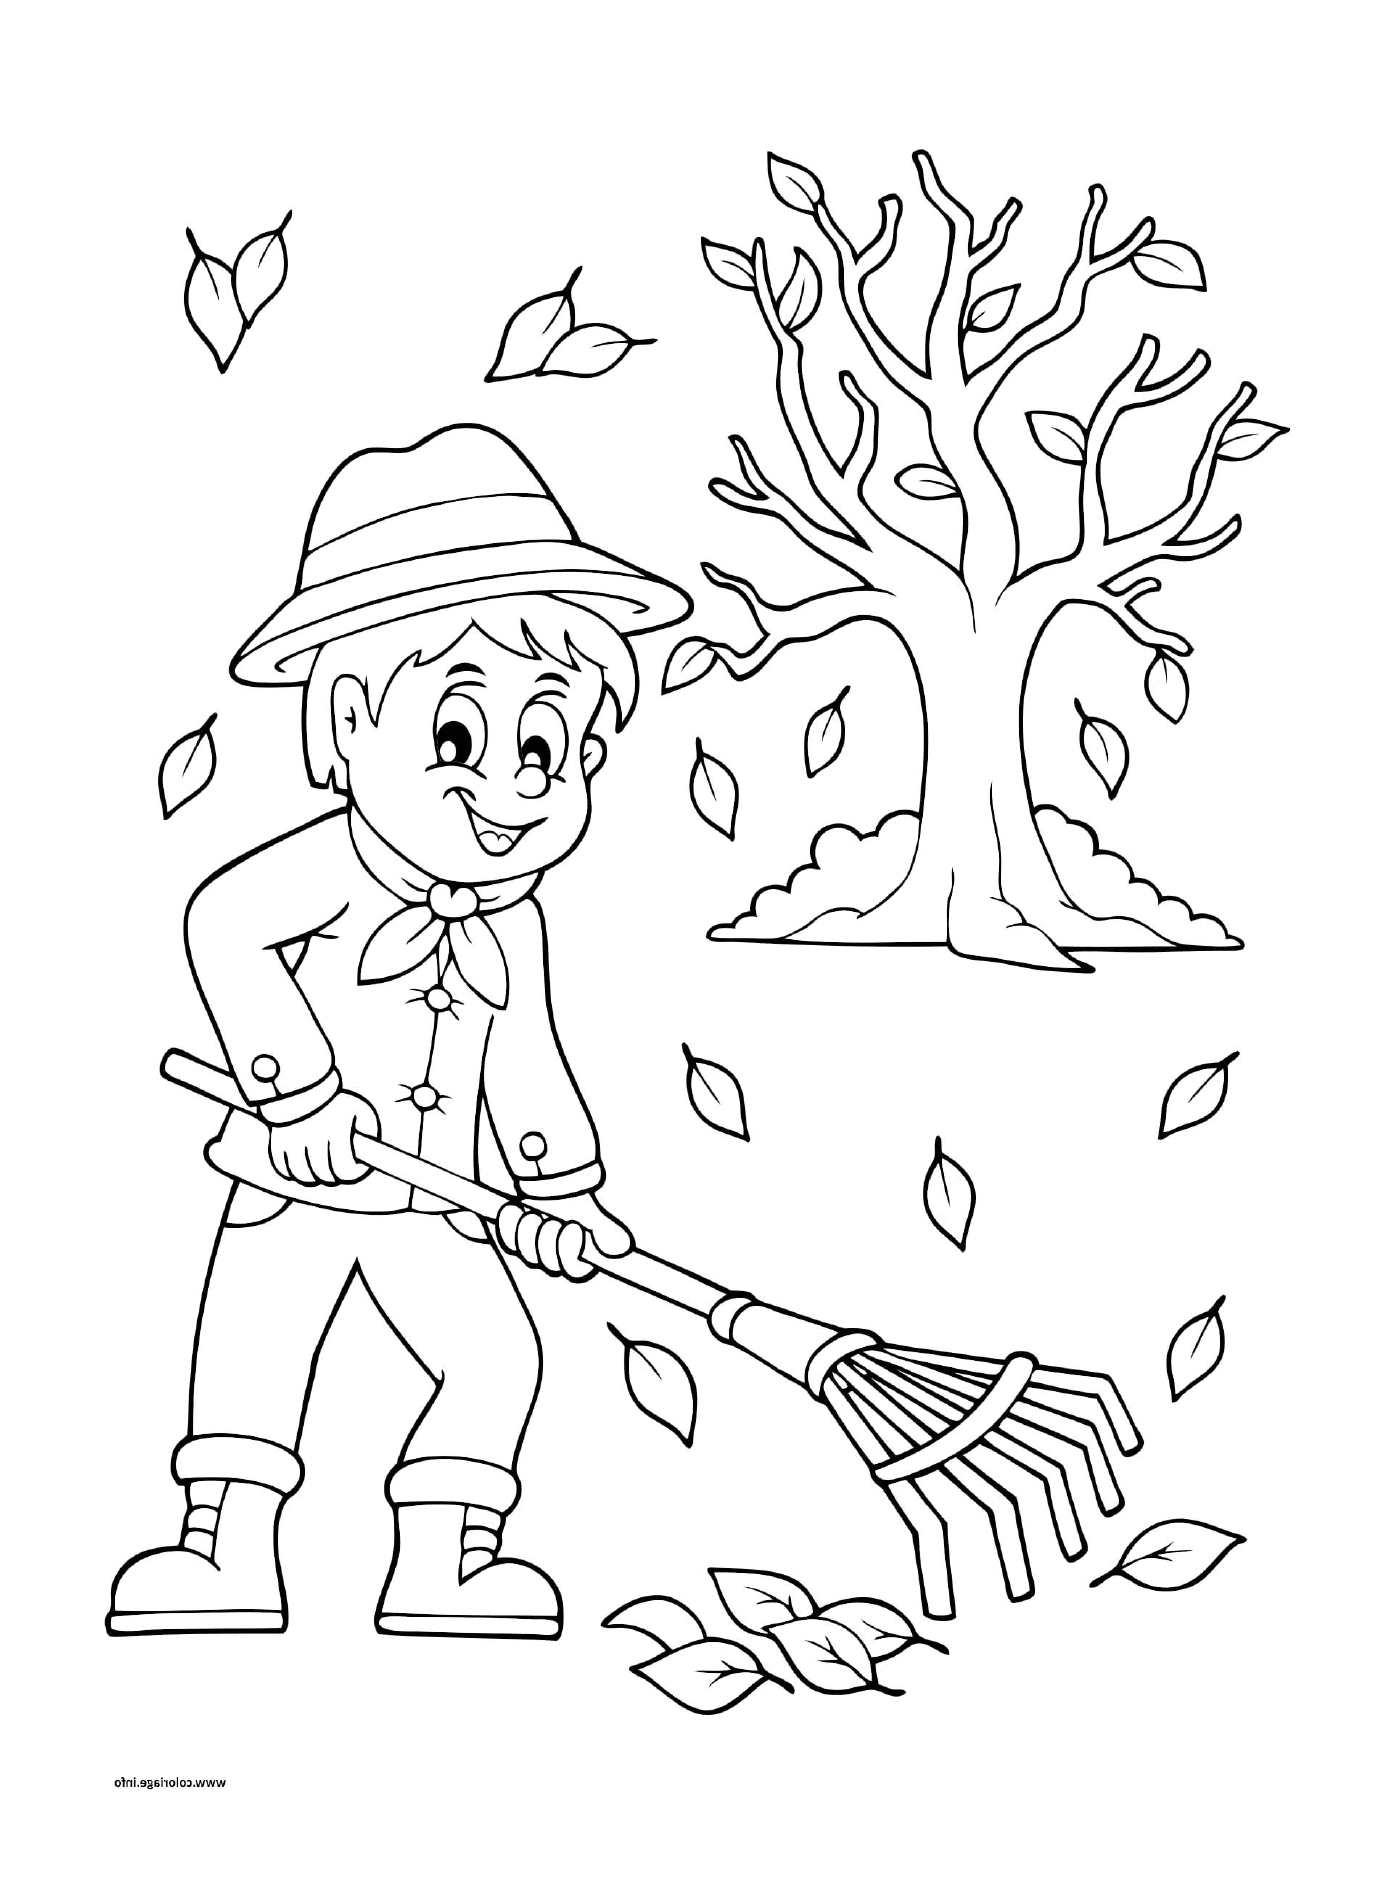  Un ragazzo che fa la spia sulle foglie in autunno 